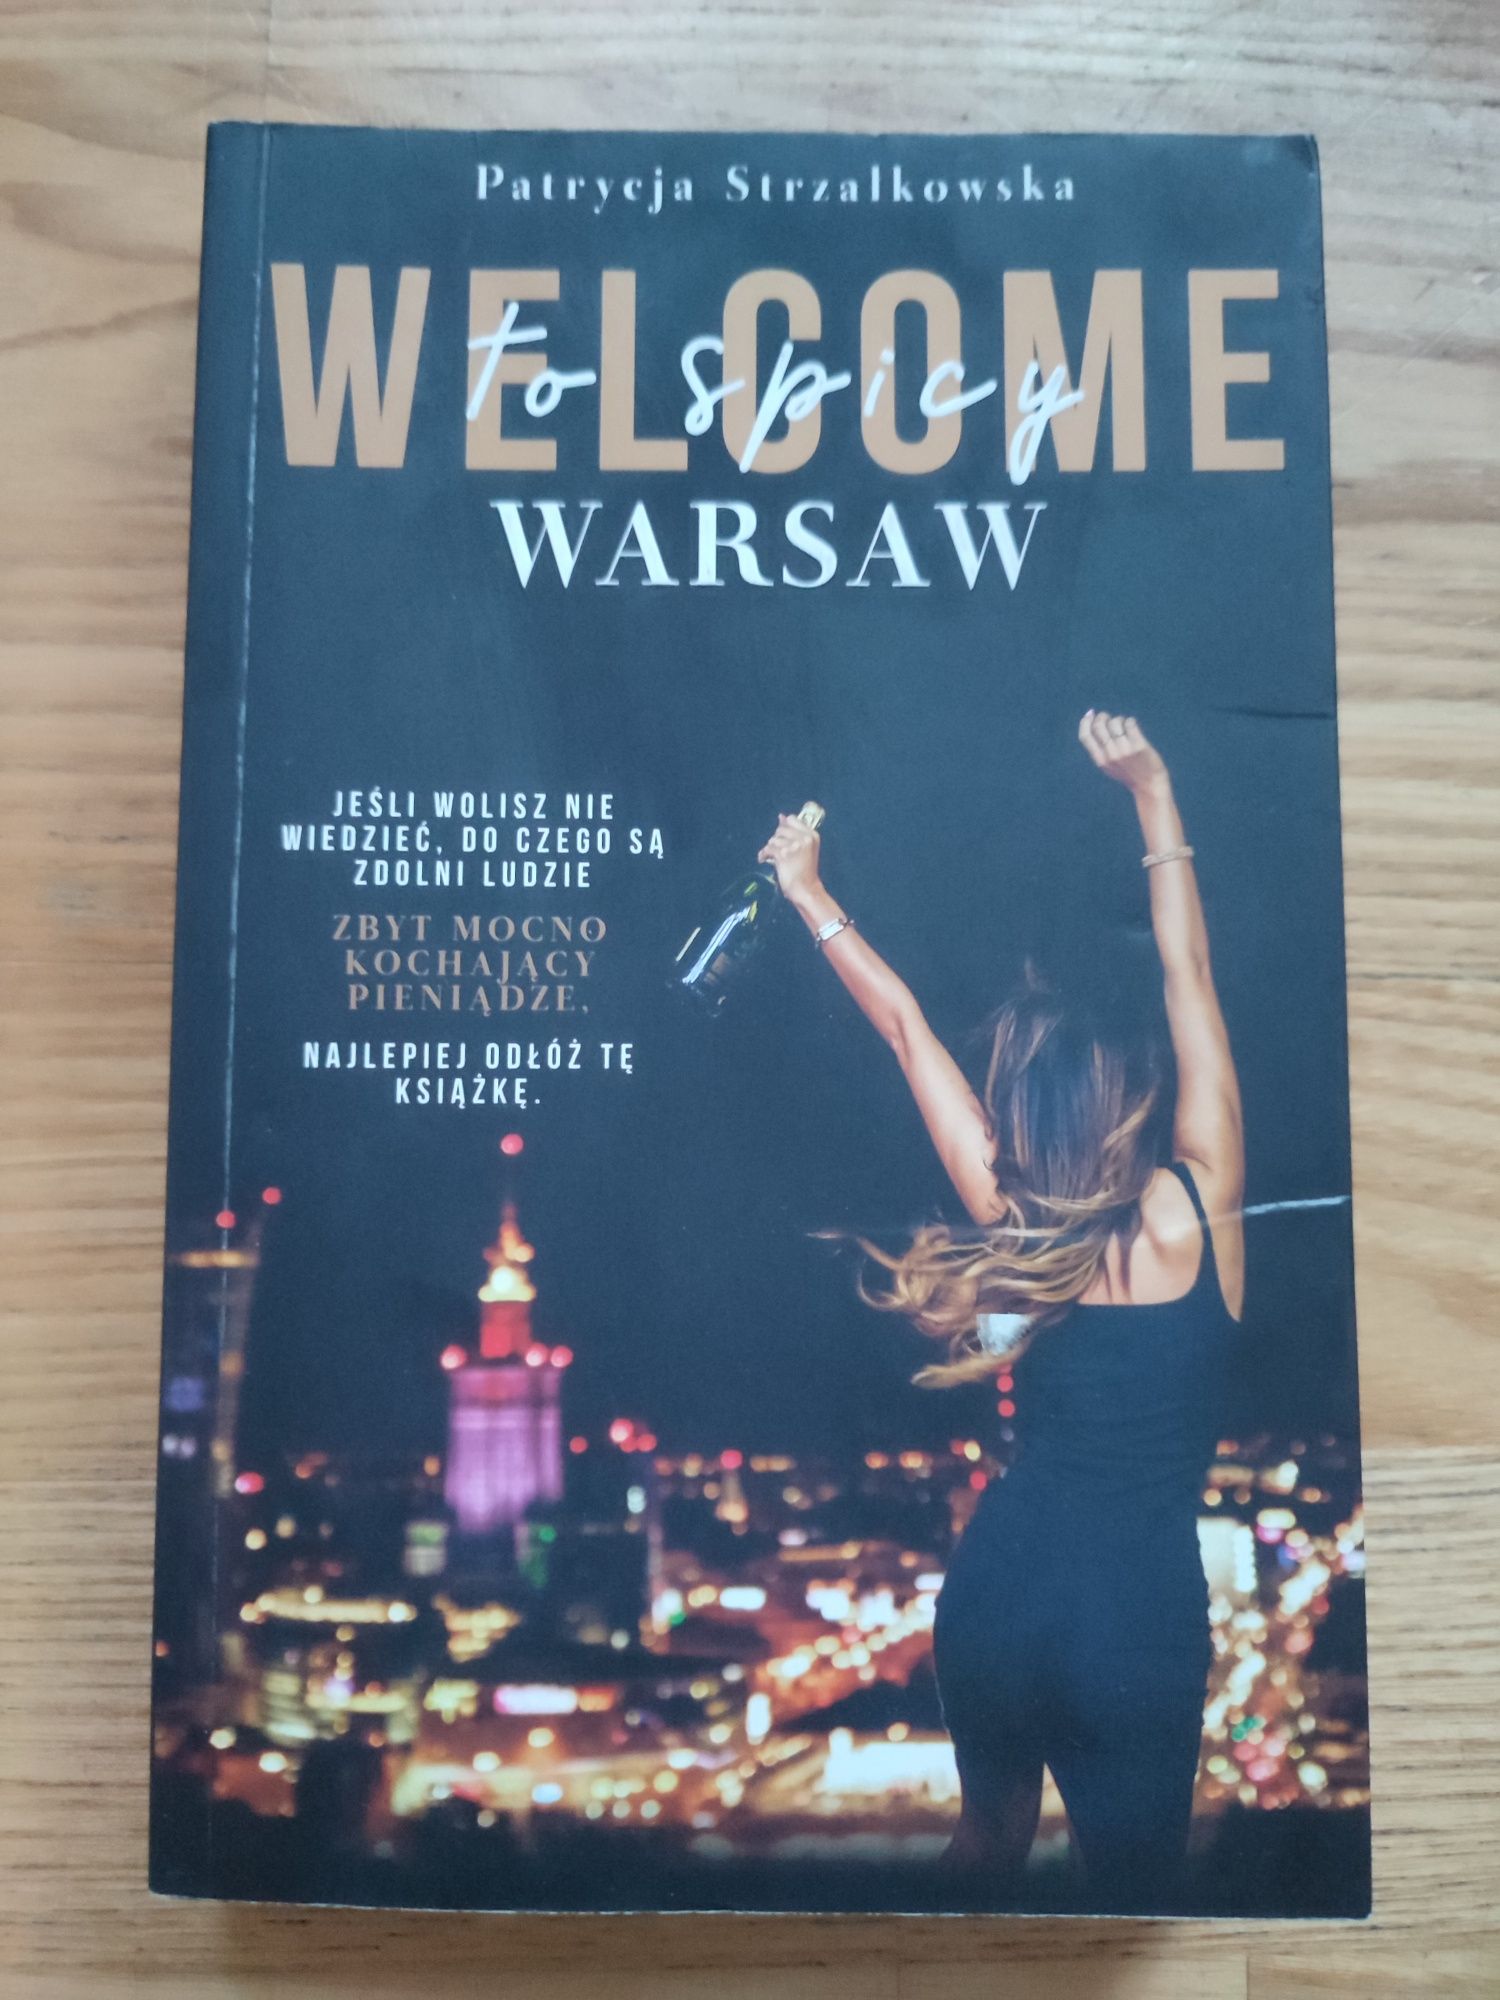 Welcome to spicy Warsaw - Patrycja Strzałkowska